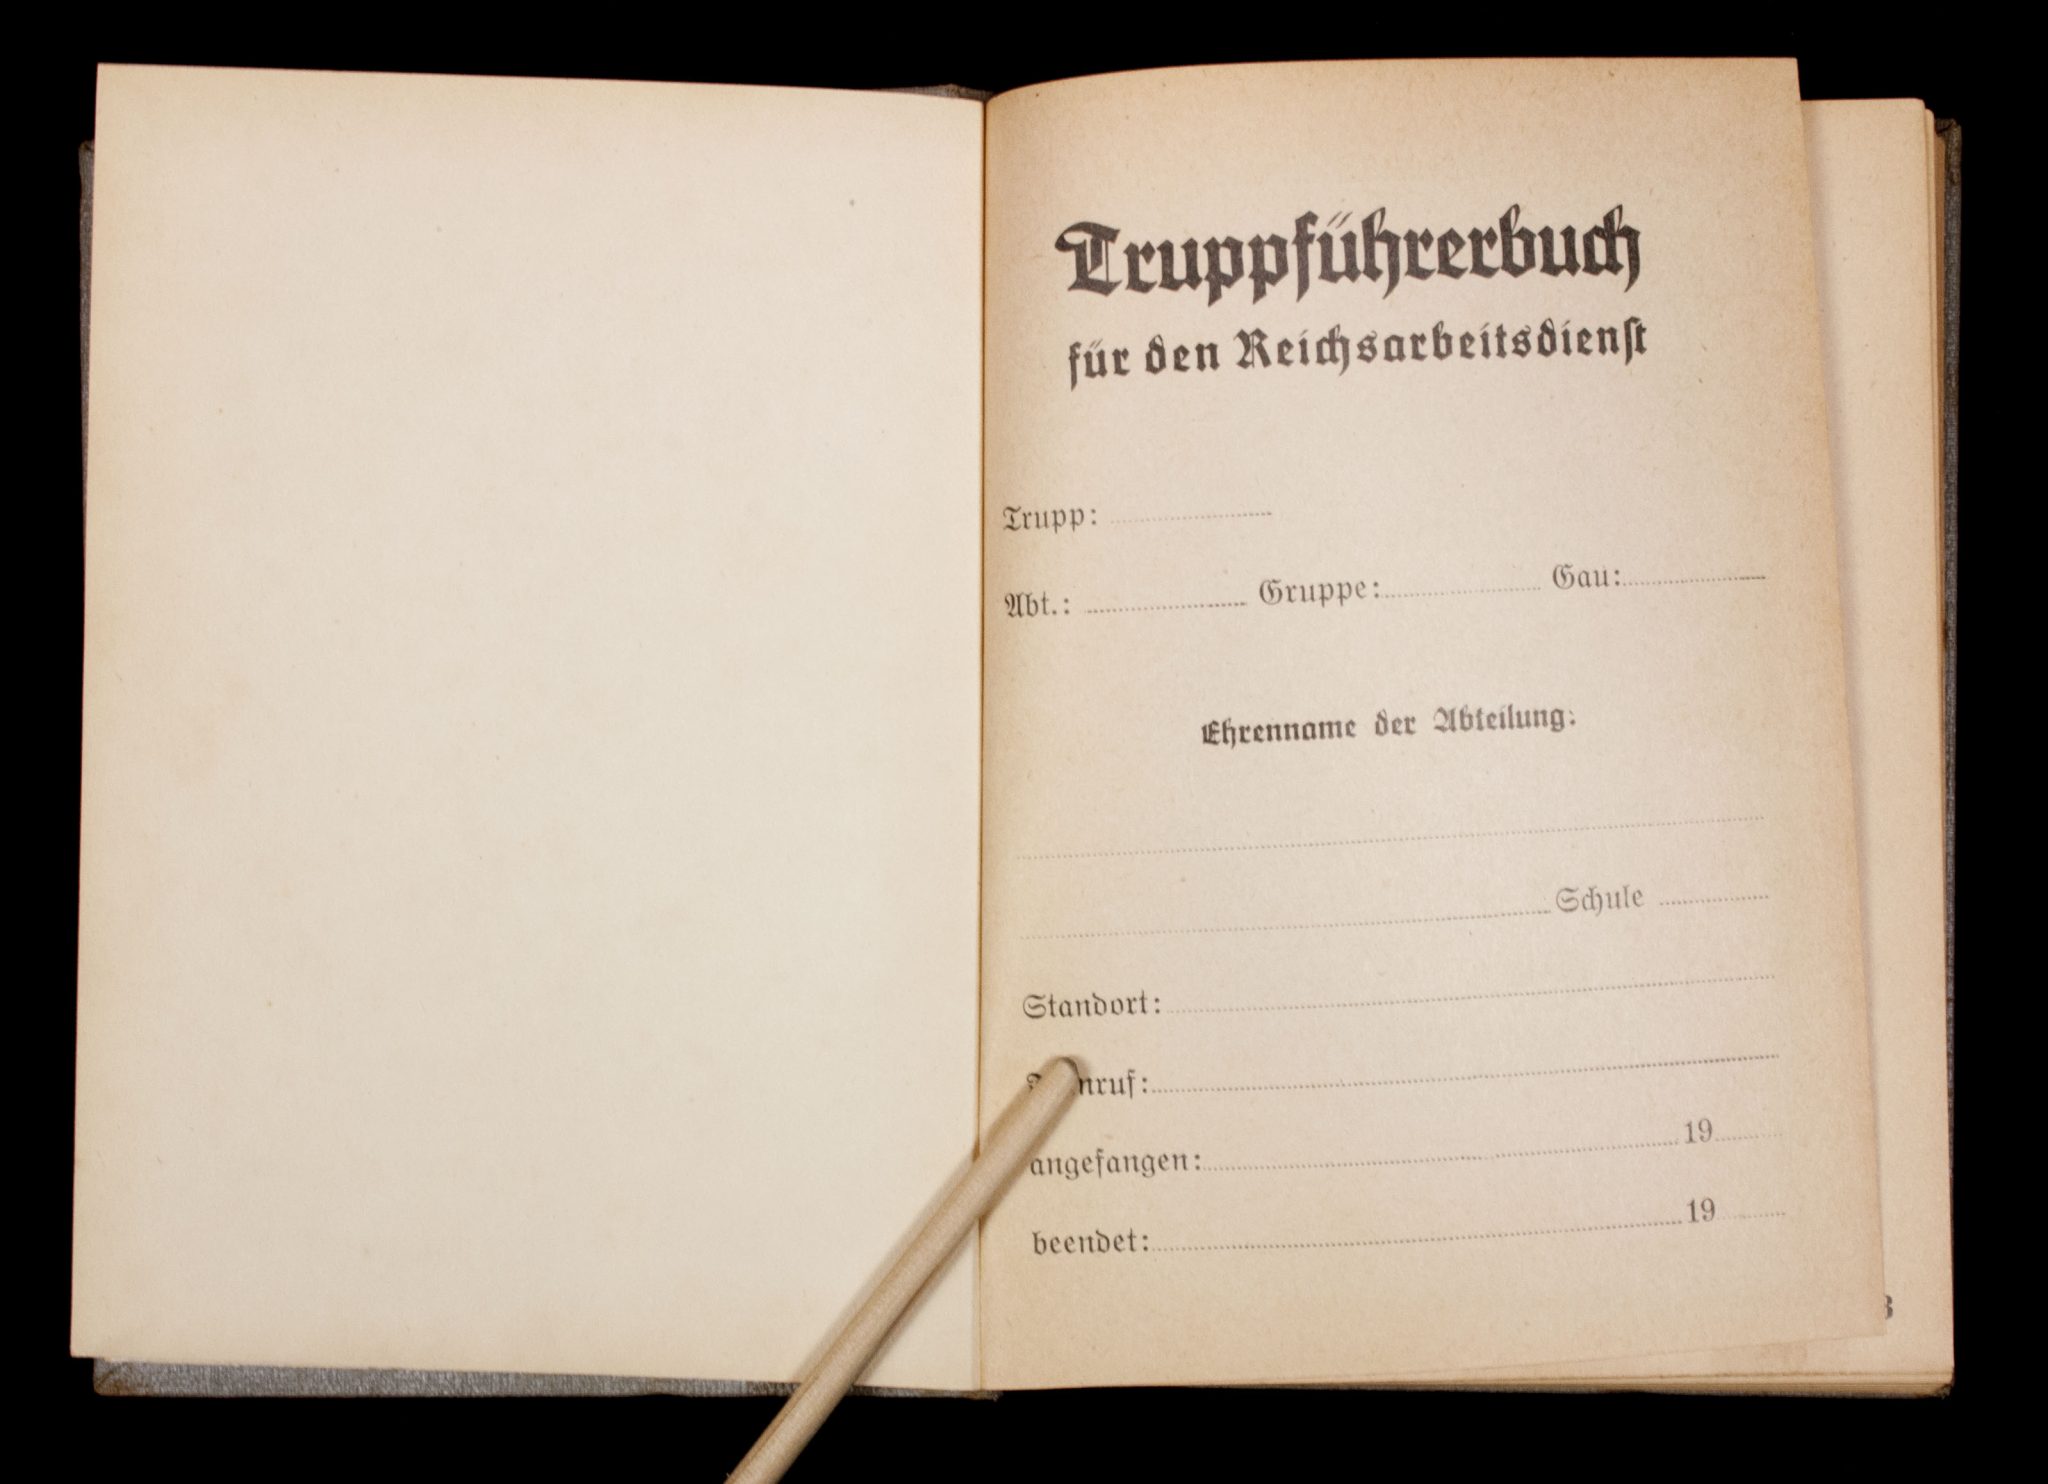 (Book) Truppführerbuch für den Reichsarbeitsdienst